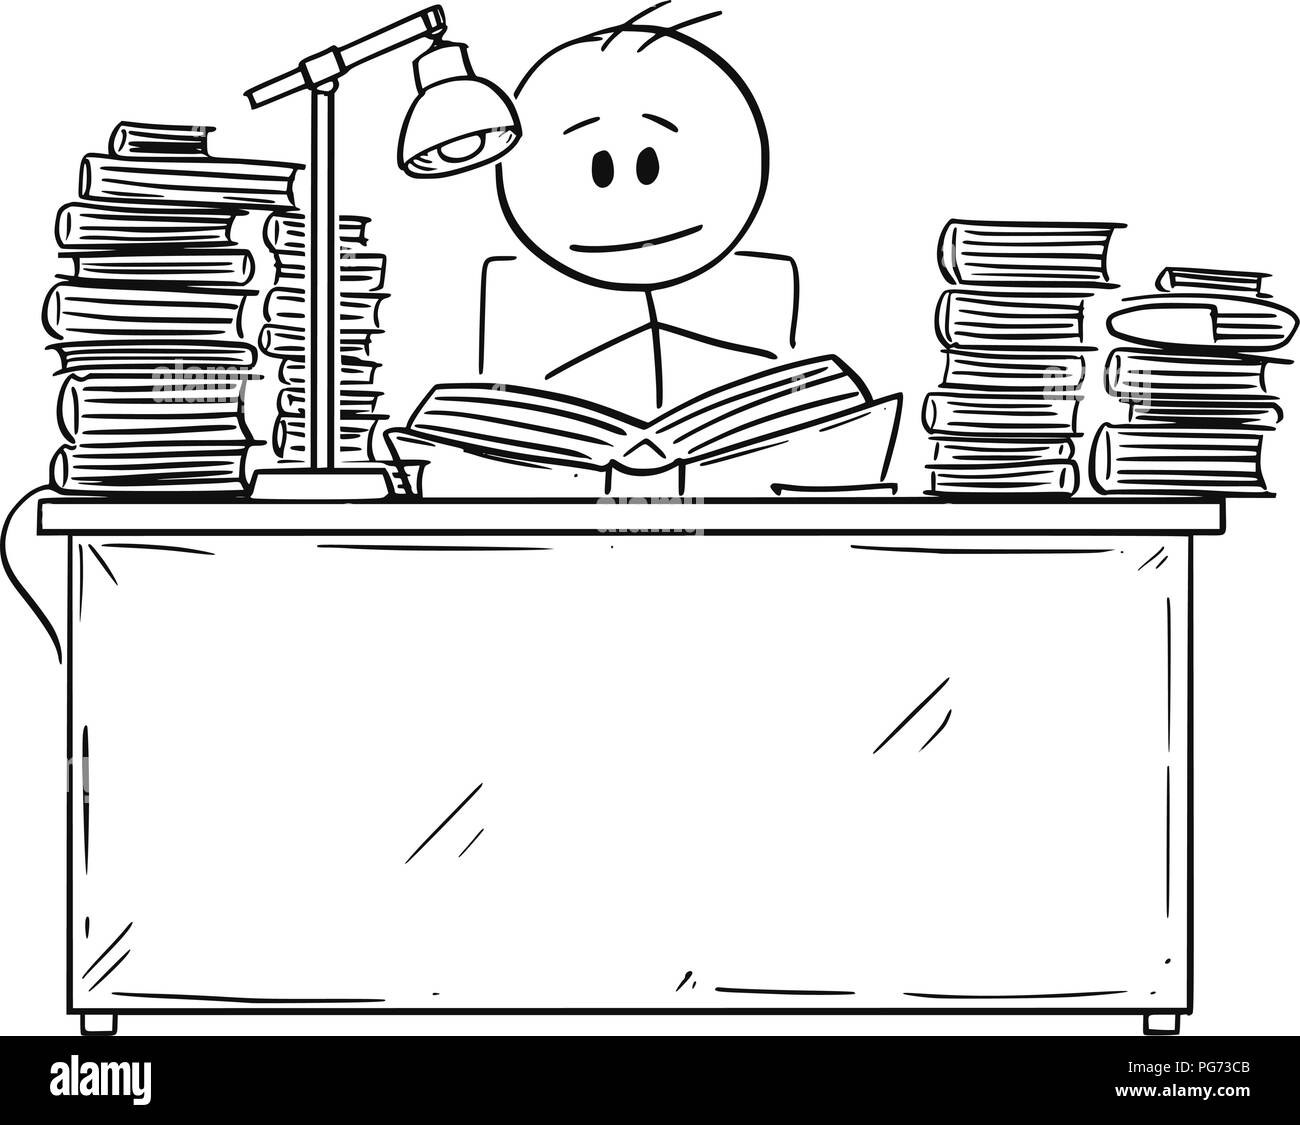 Lectura de libros digitales o lector electrónico tableta en ilustración de  dibujos animados plana de vector de mano de personas, hombre aprendiendo o  estudiando ebook sobre el escritorio del lugar de trabajo